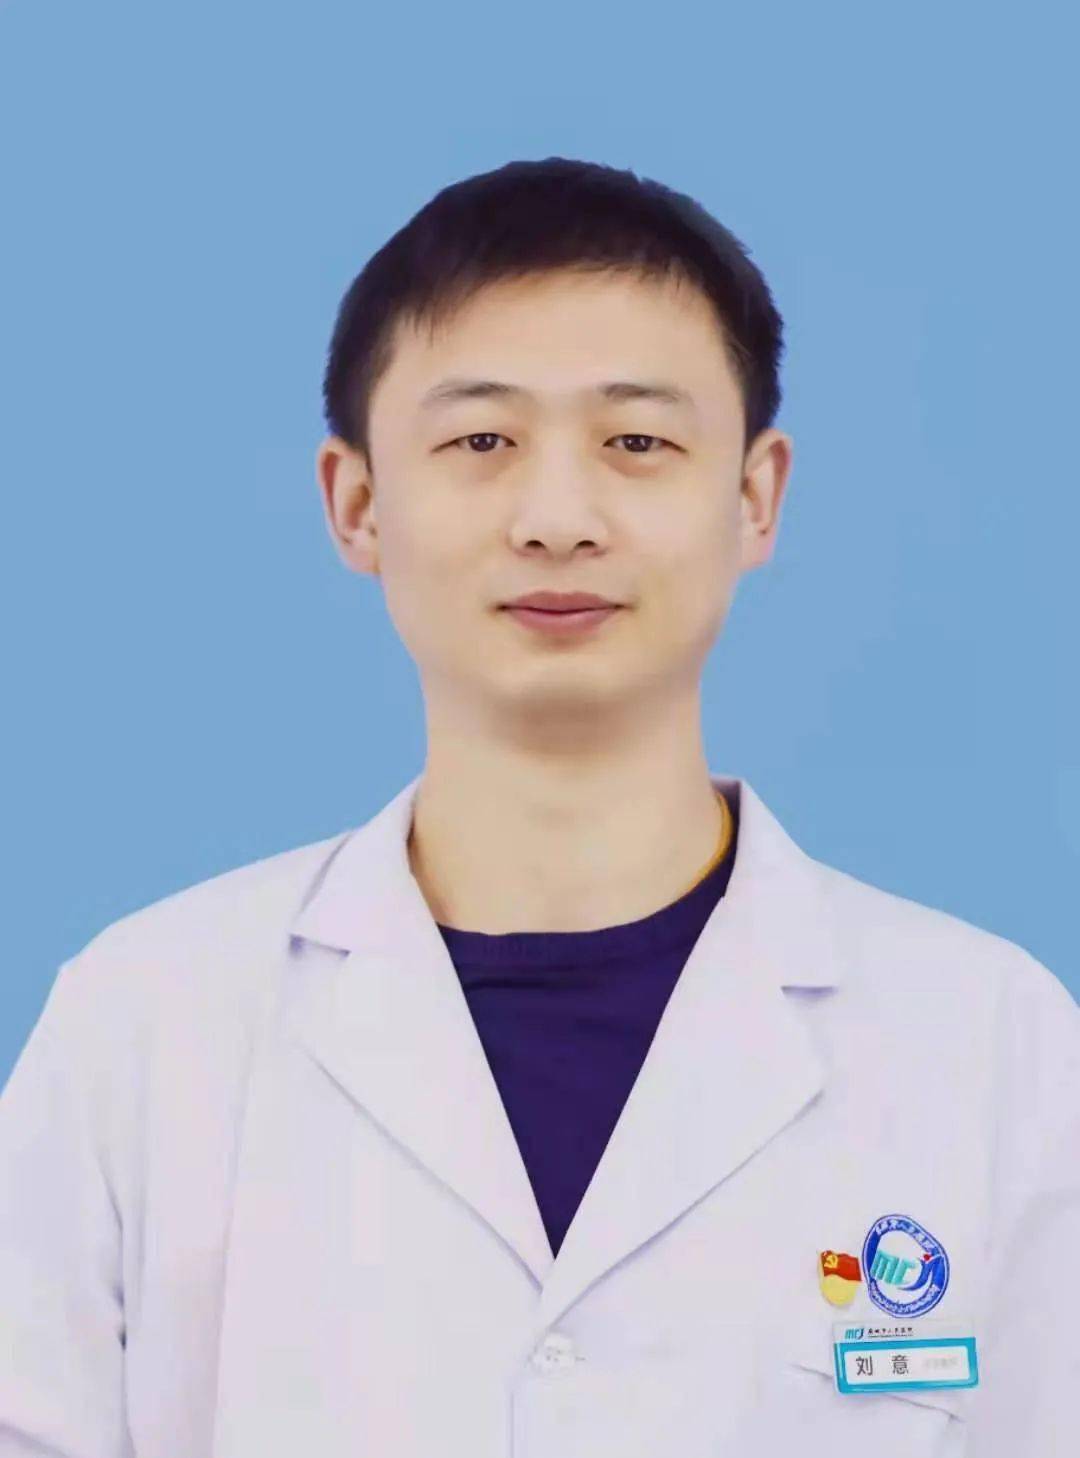 我是刘意,胸心外科医生,光荣在党1年,从医14年